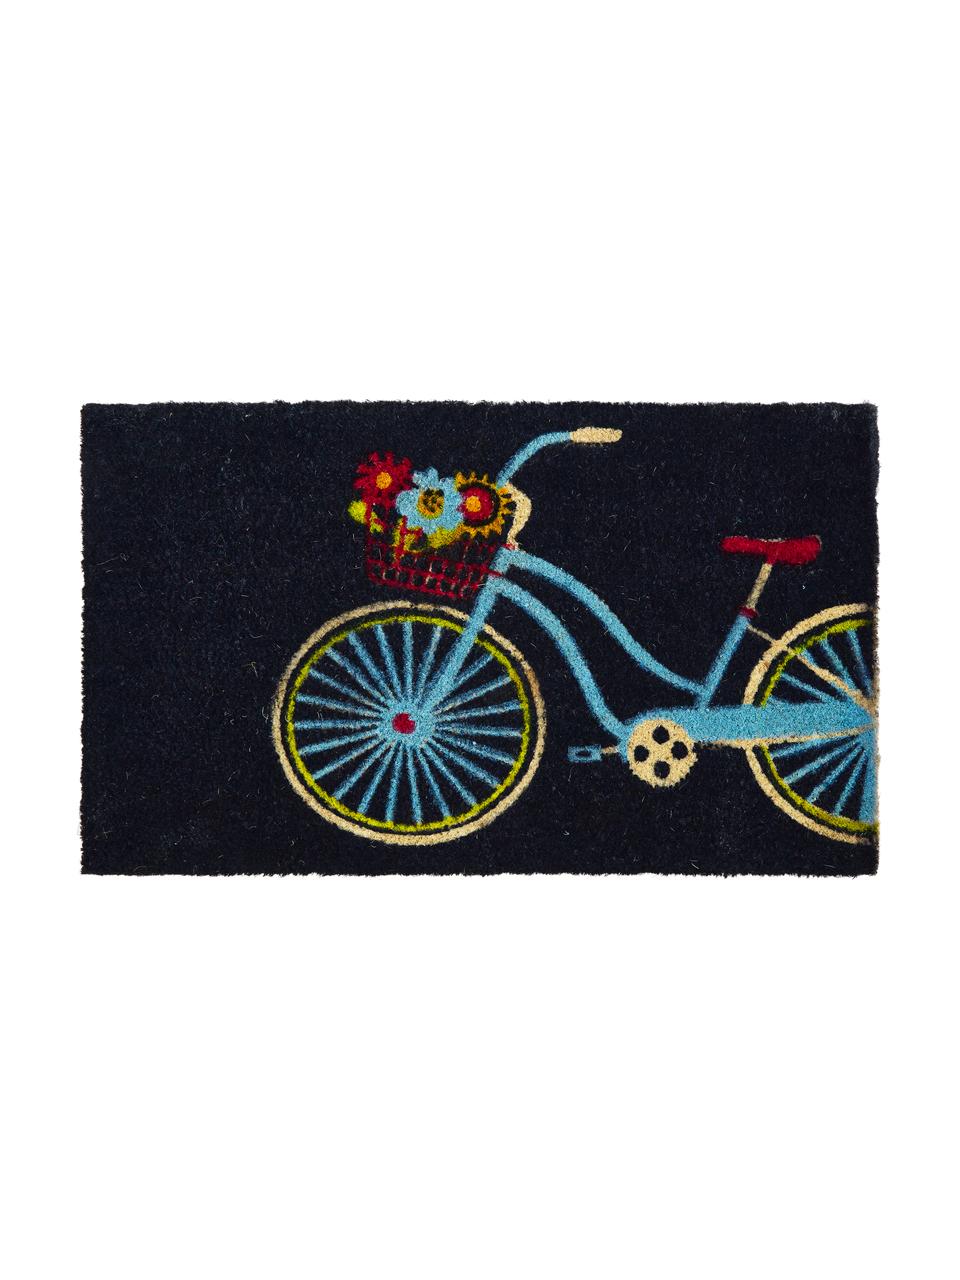 Fußmatte Bicycle, Oberseite: Kokosfaser, Unterseite: Kunststoff (PVC), Schwarz, Mehrfarbig, 45 x 75 cm